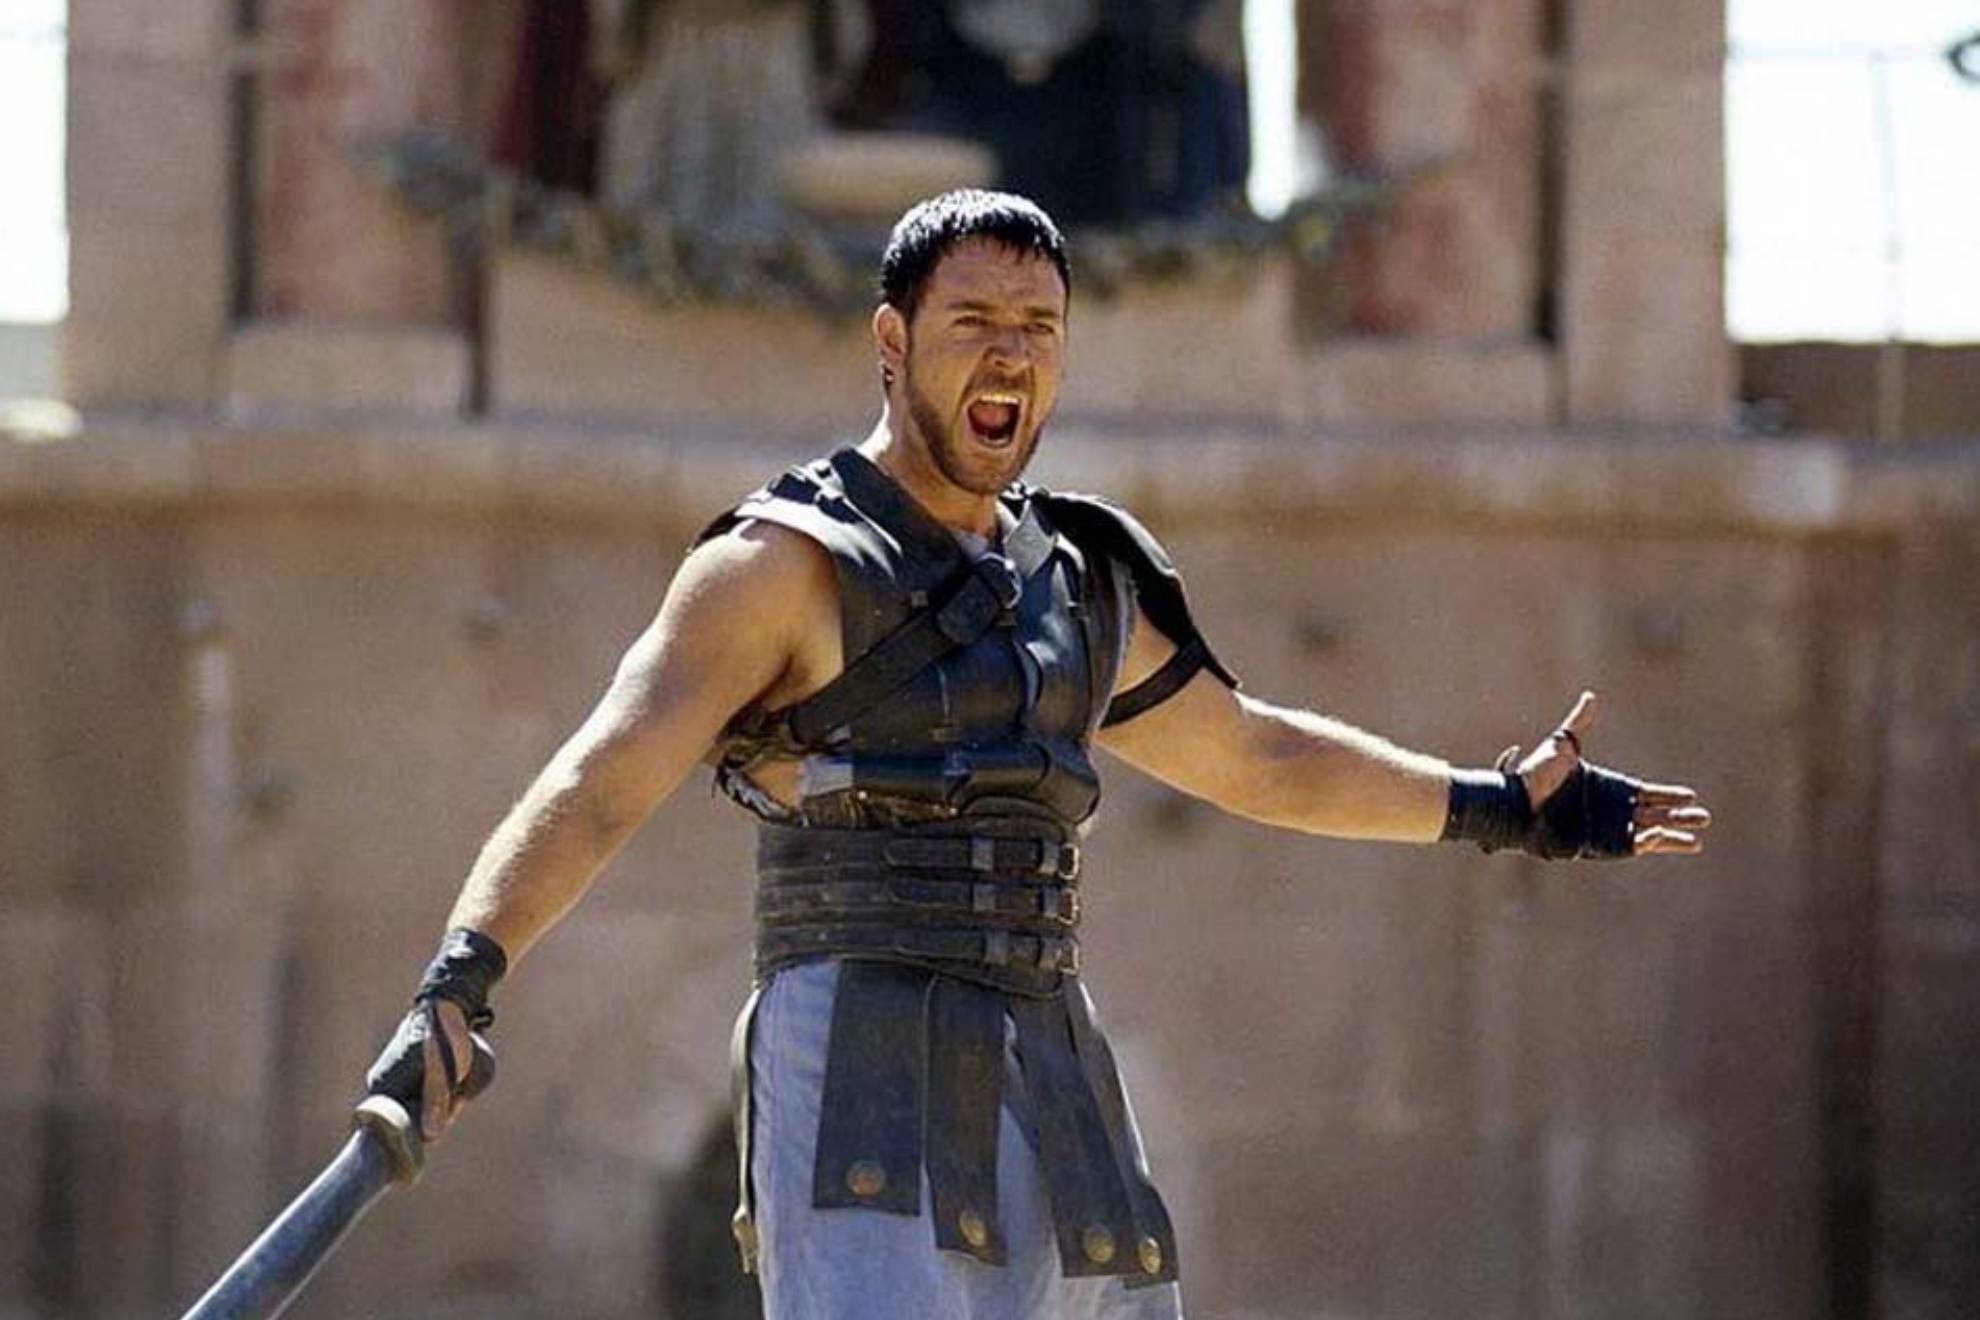 ¿Saldrá Russell Crowe en 'Gladiator 2'? El actor se pronuncia sobre el rumor